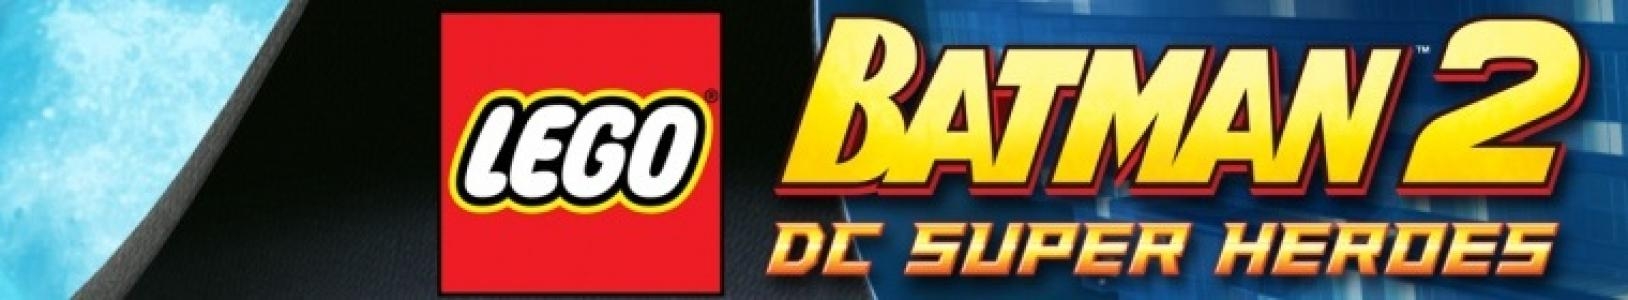 LEGO Batman 2: DC Super Heroes banner